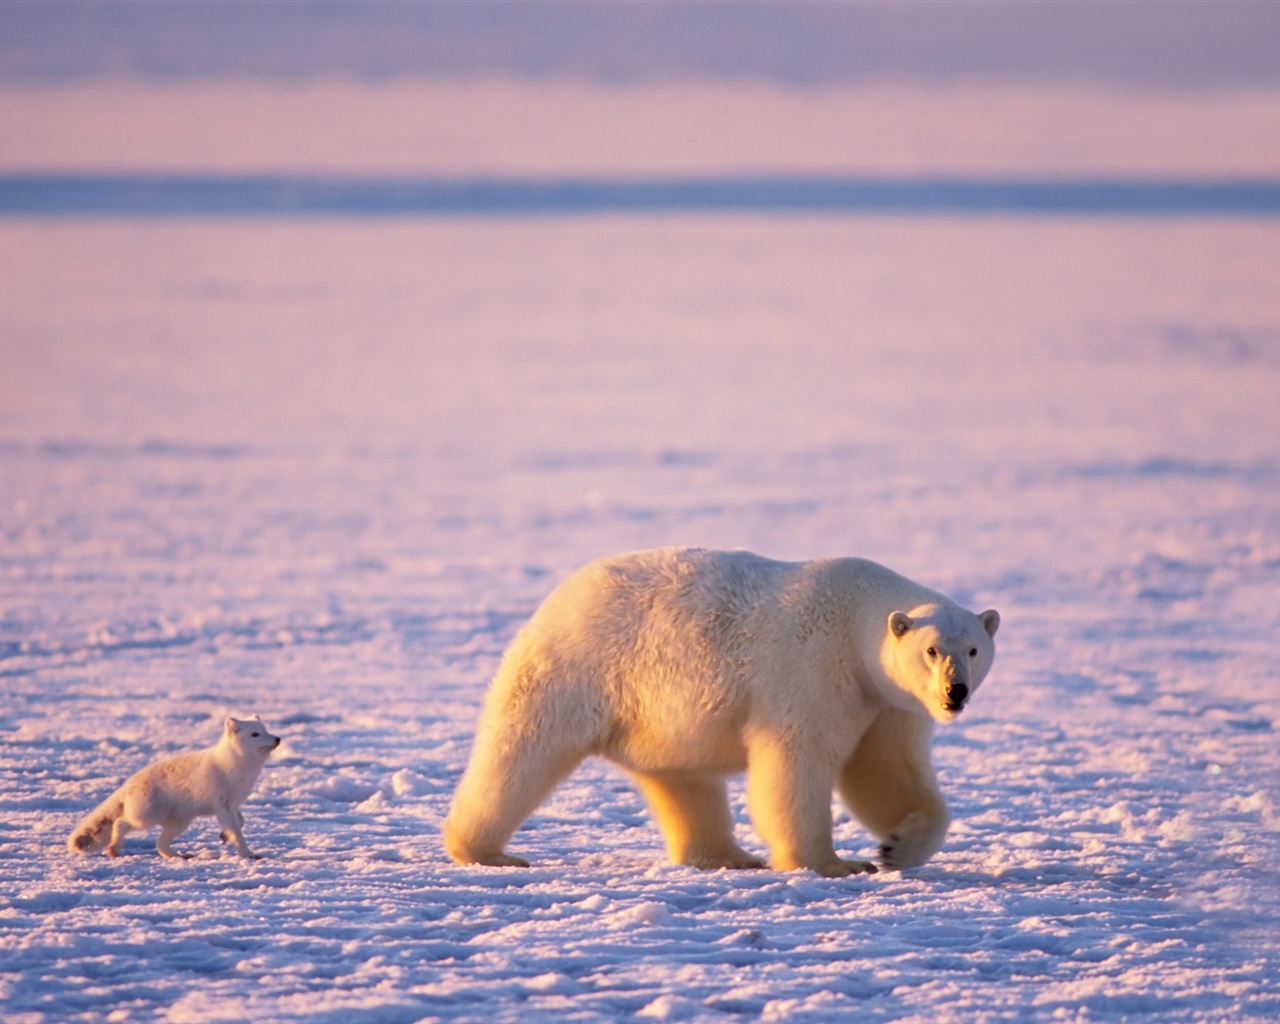 Windows 8: Fondos del Ártico, el paisaje ecológico, ártico animales #10 - 1280x1024